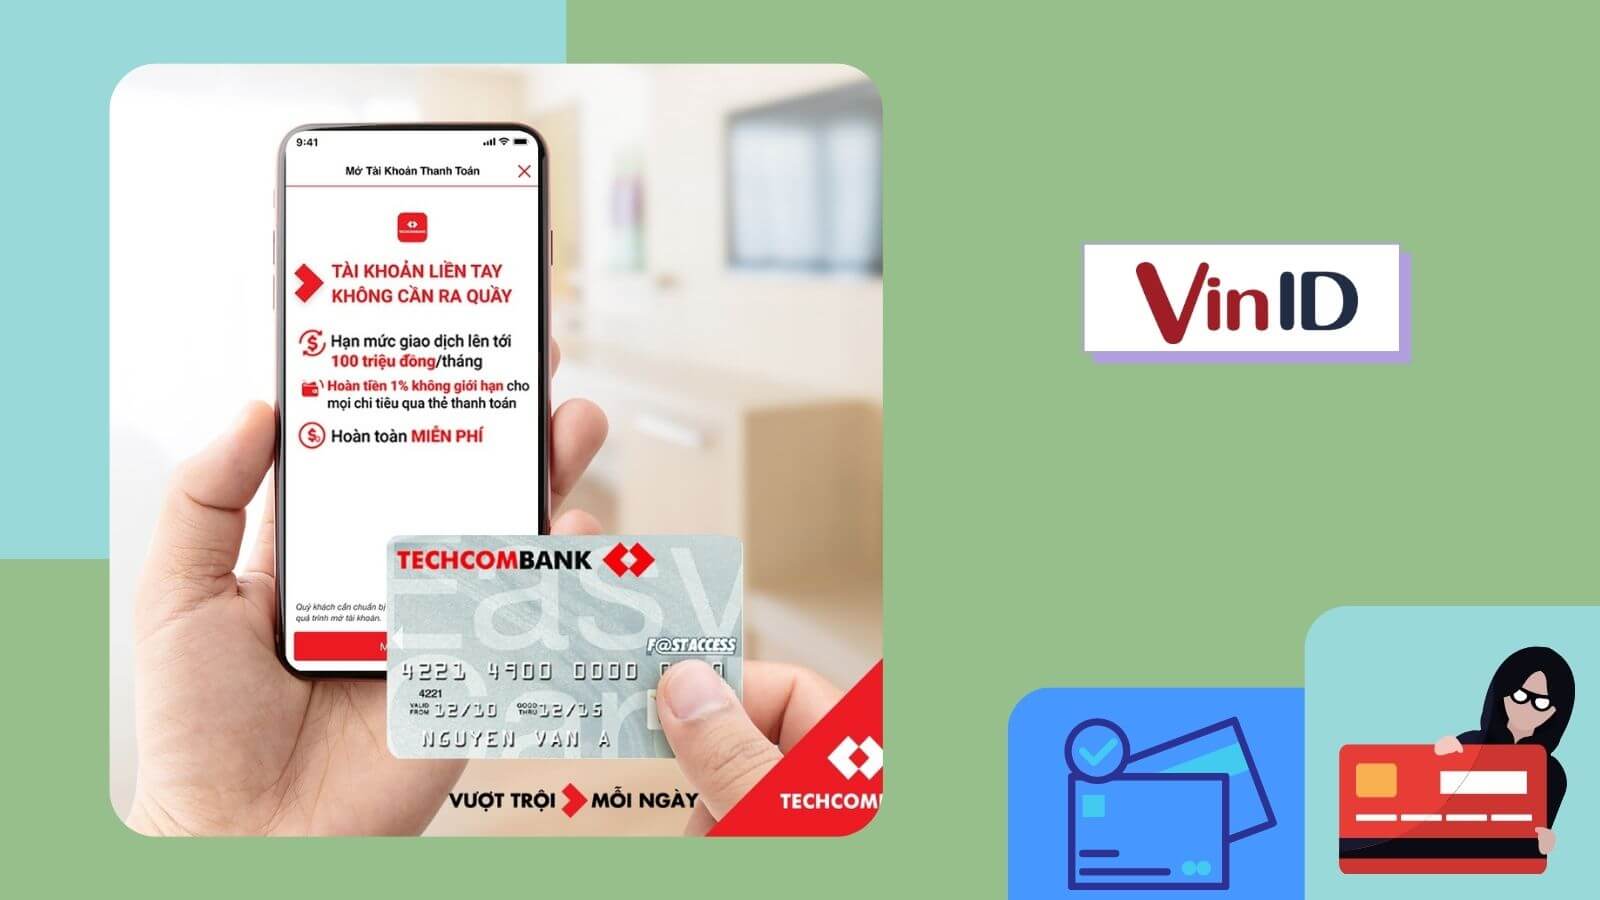 Thẻ Techcombank online là một cách tiện lợi để quản lý tài chính của bạn một cách thông minh hơn. Hãy xem hình ảnh liên quan đến thẻ này để khám phá tất cả các ưu điểm và lợi ích mà thẻ này mang lại cho bạn.